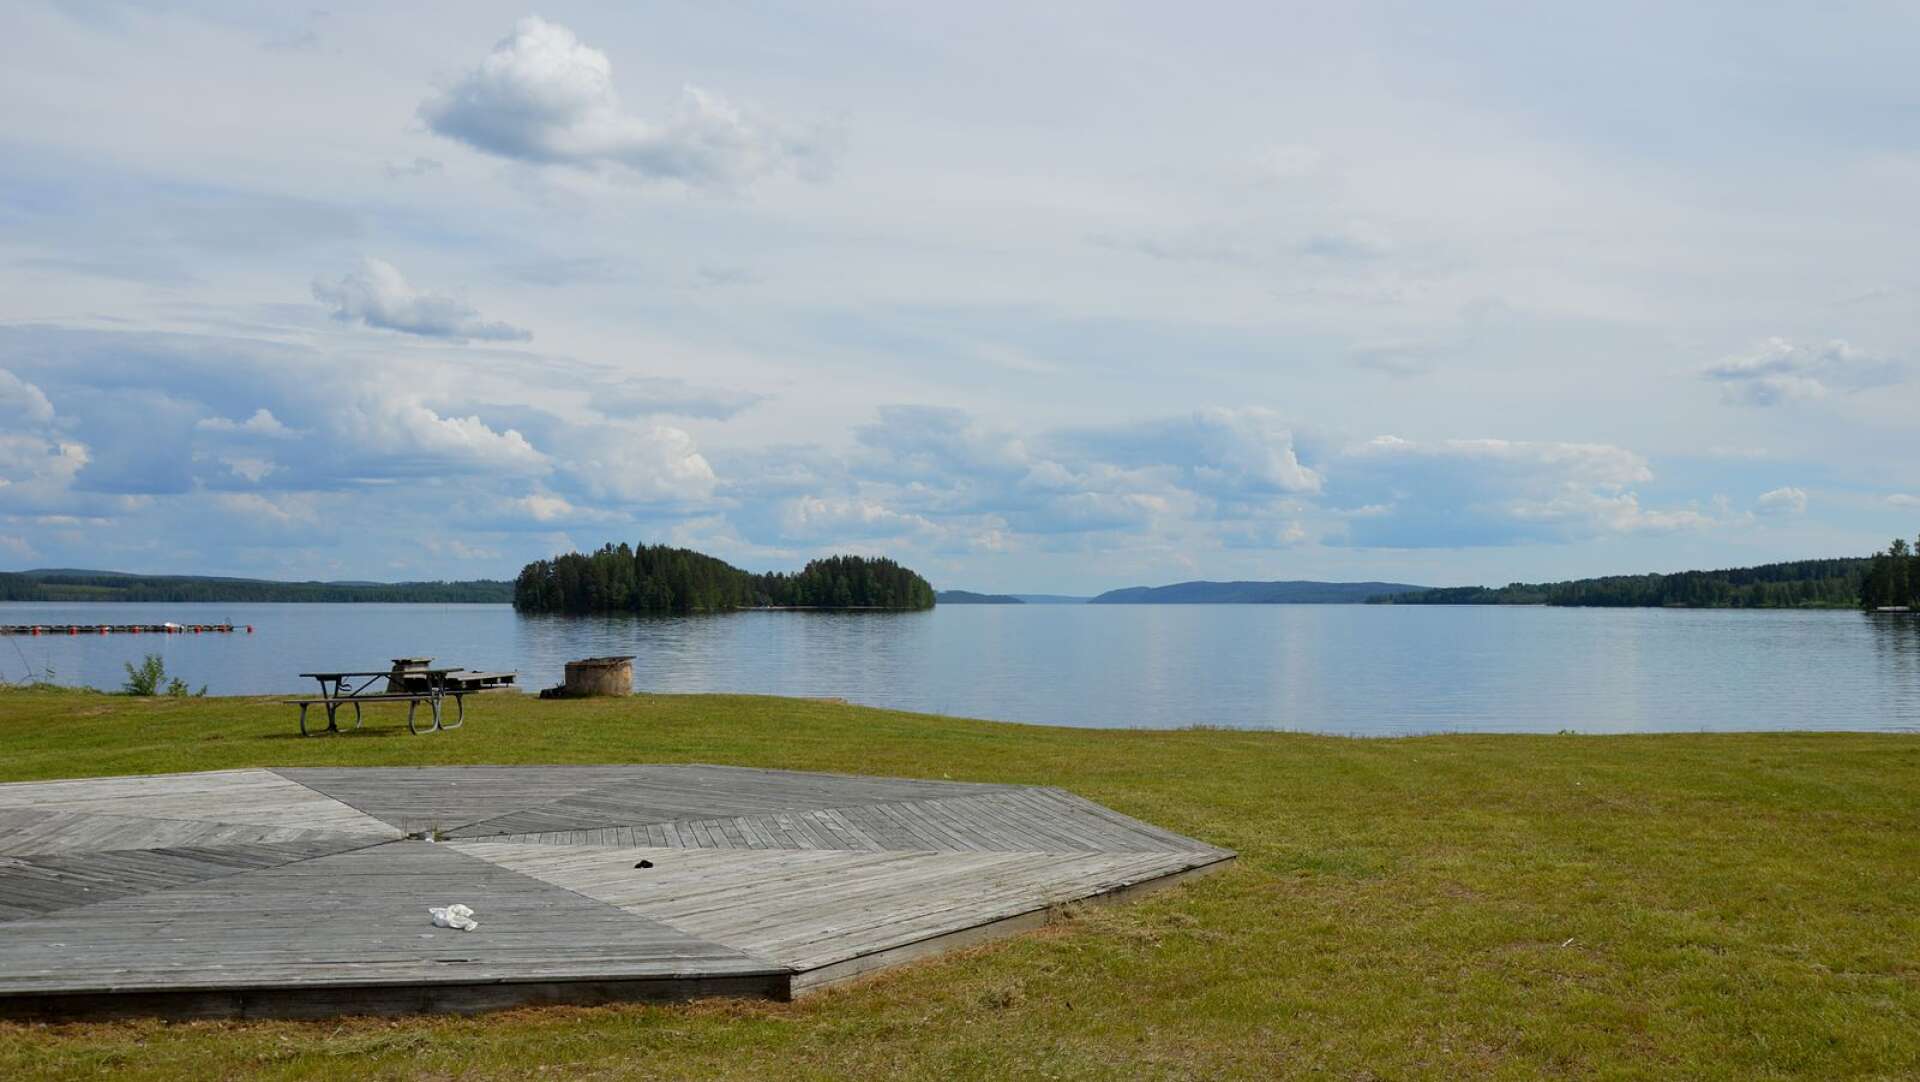 Det finns många vackra badplatser i Sunne kommun. Detta kanske är året då vi besöker dem alla. Här är den bedårande utsikten över Fryken och Malôa från Öjervik badplats.